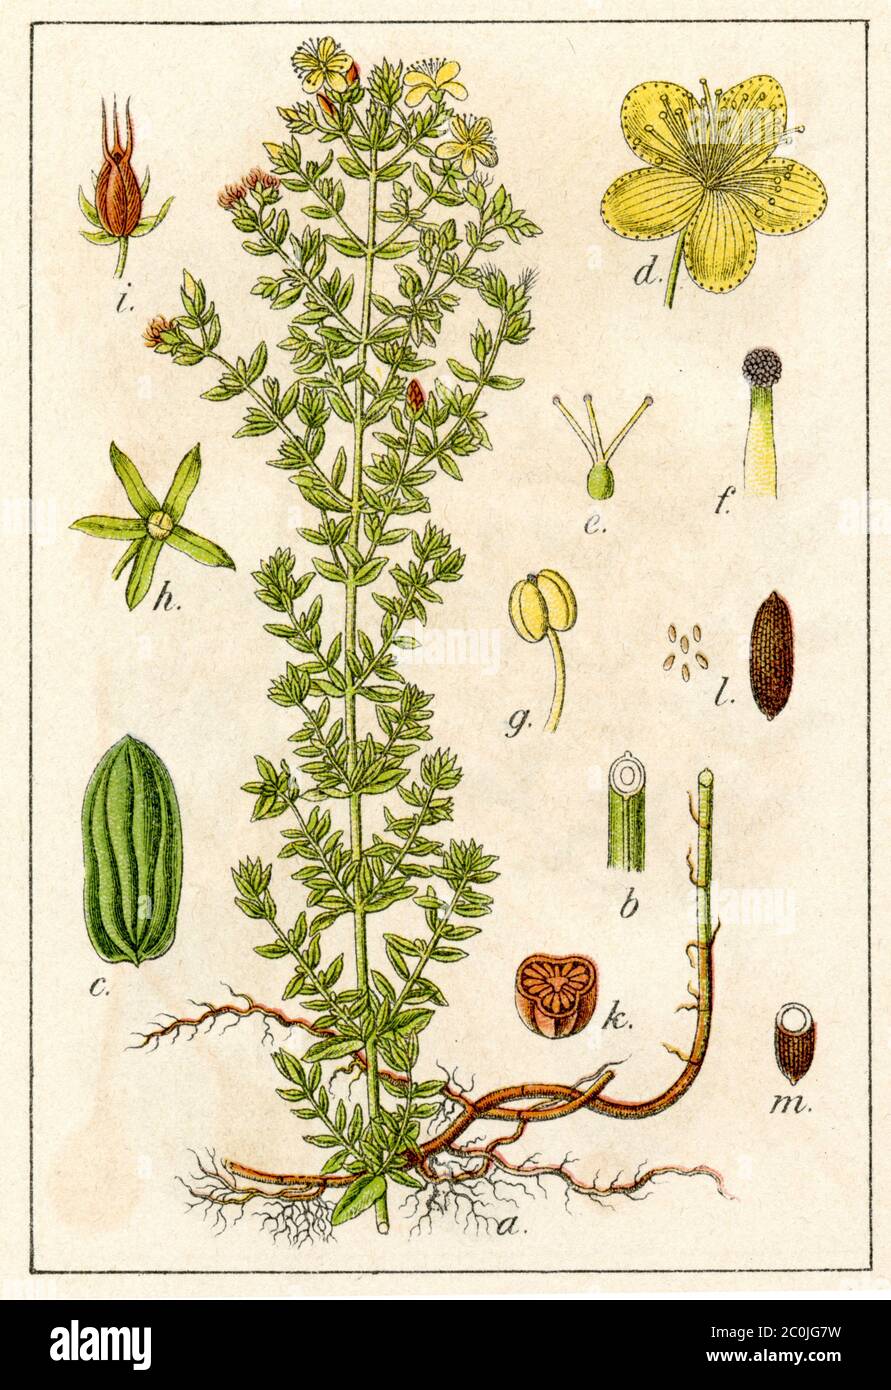 Saint John's wort / Hypericum perforatum / Echtes Johanniskraut (botany book, 1902) Stock Photo